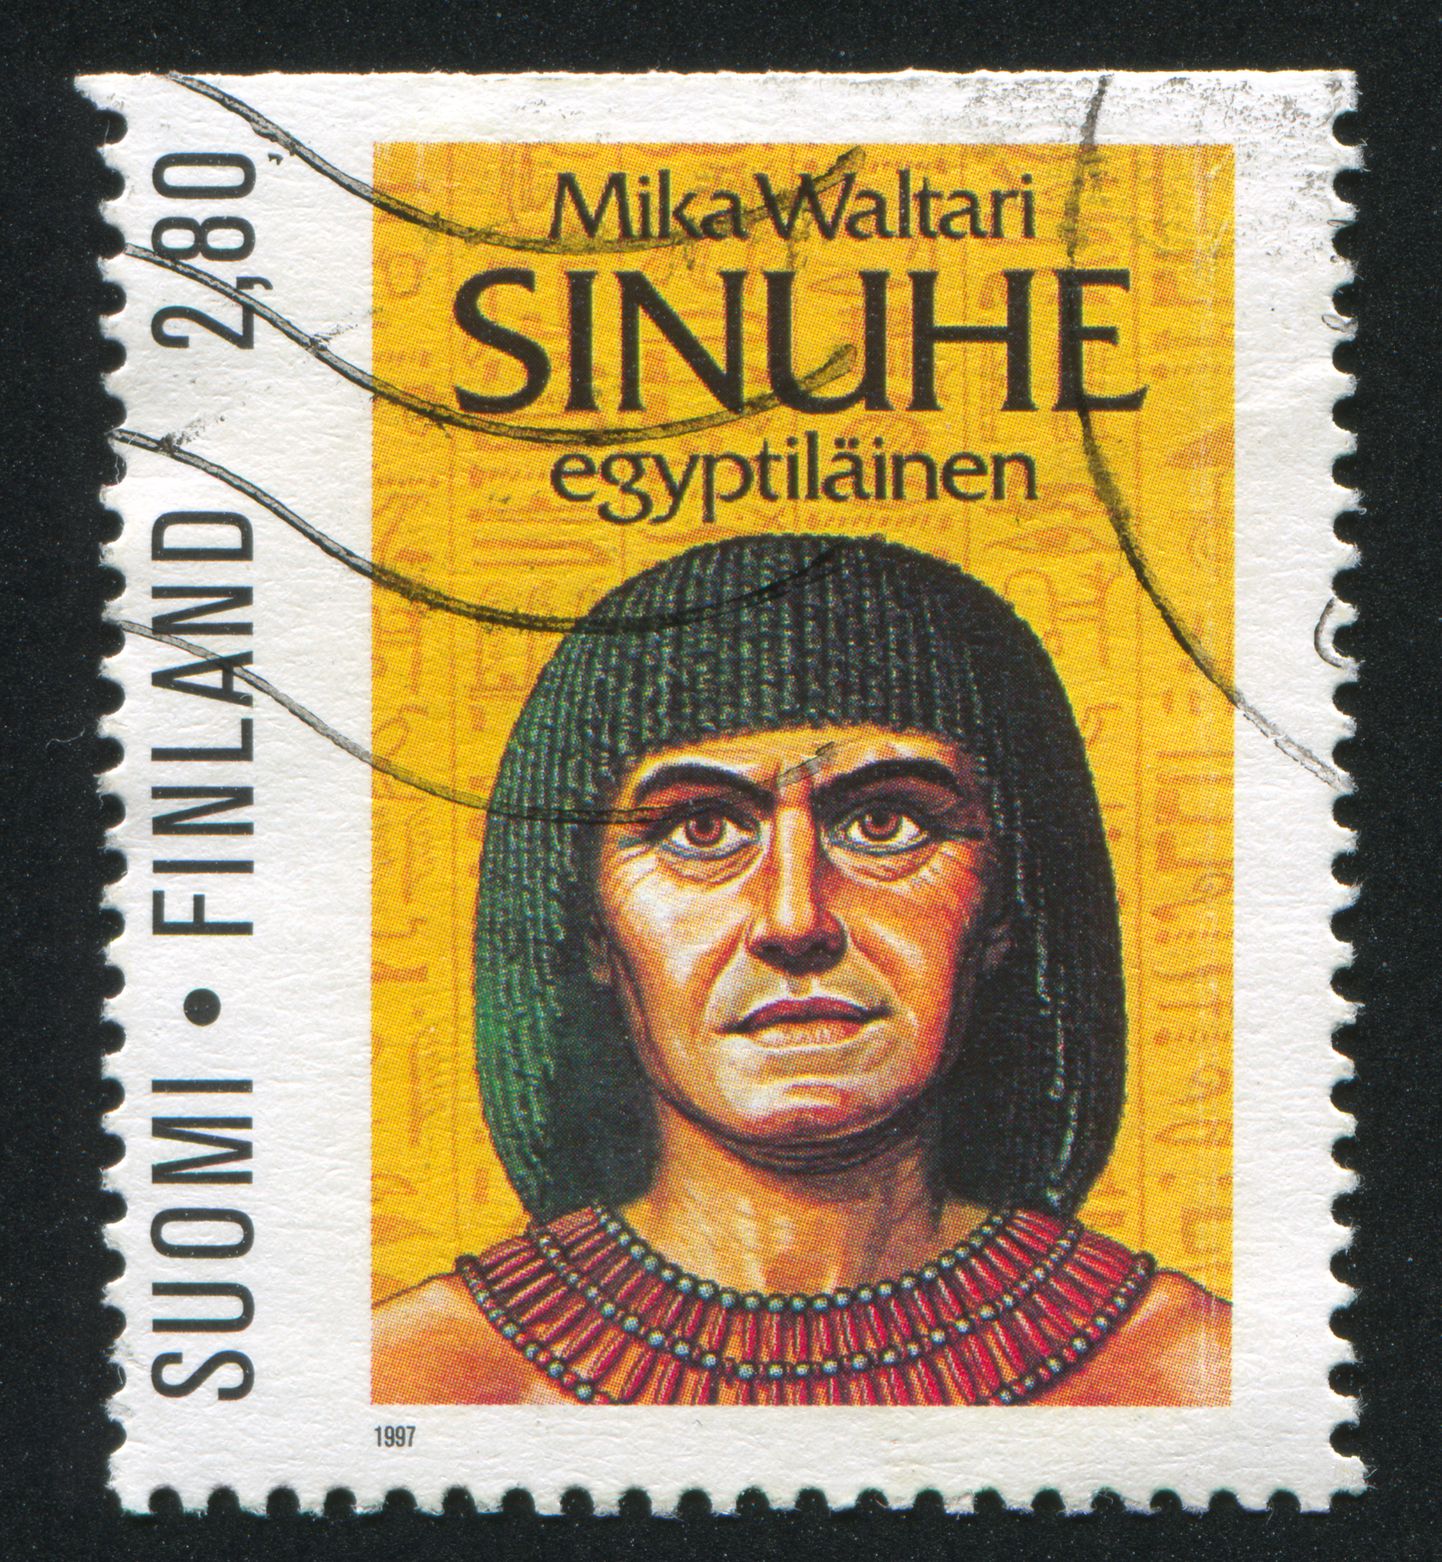 Soome postmark aastast 1997.